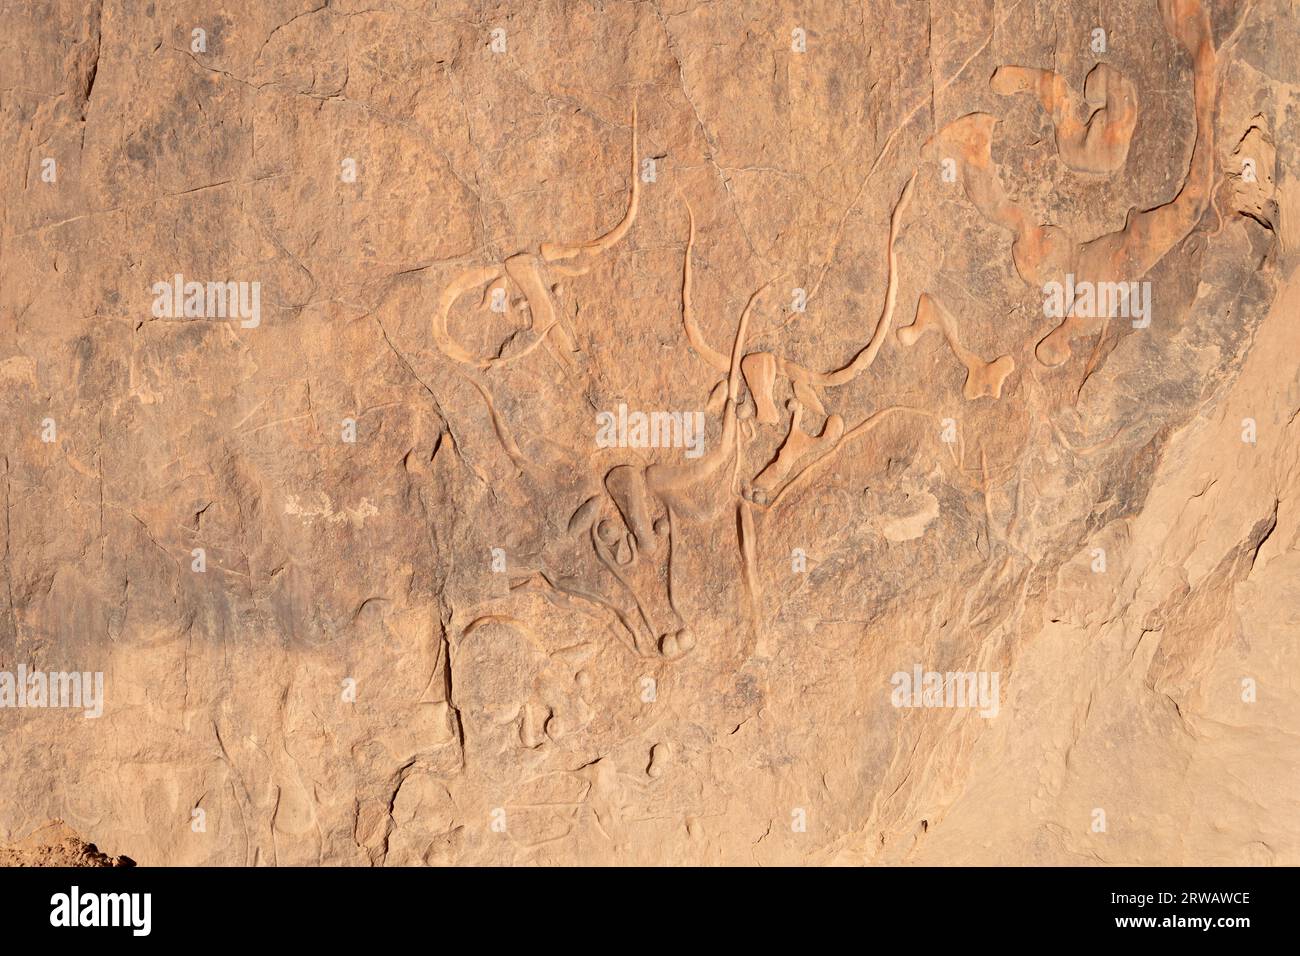 rock art in the sahara desert, djanet, algeria Stock Photo